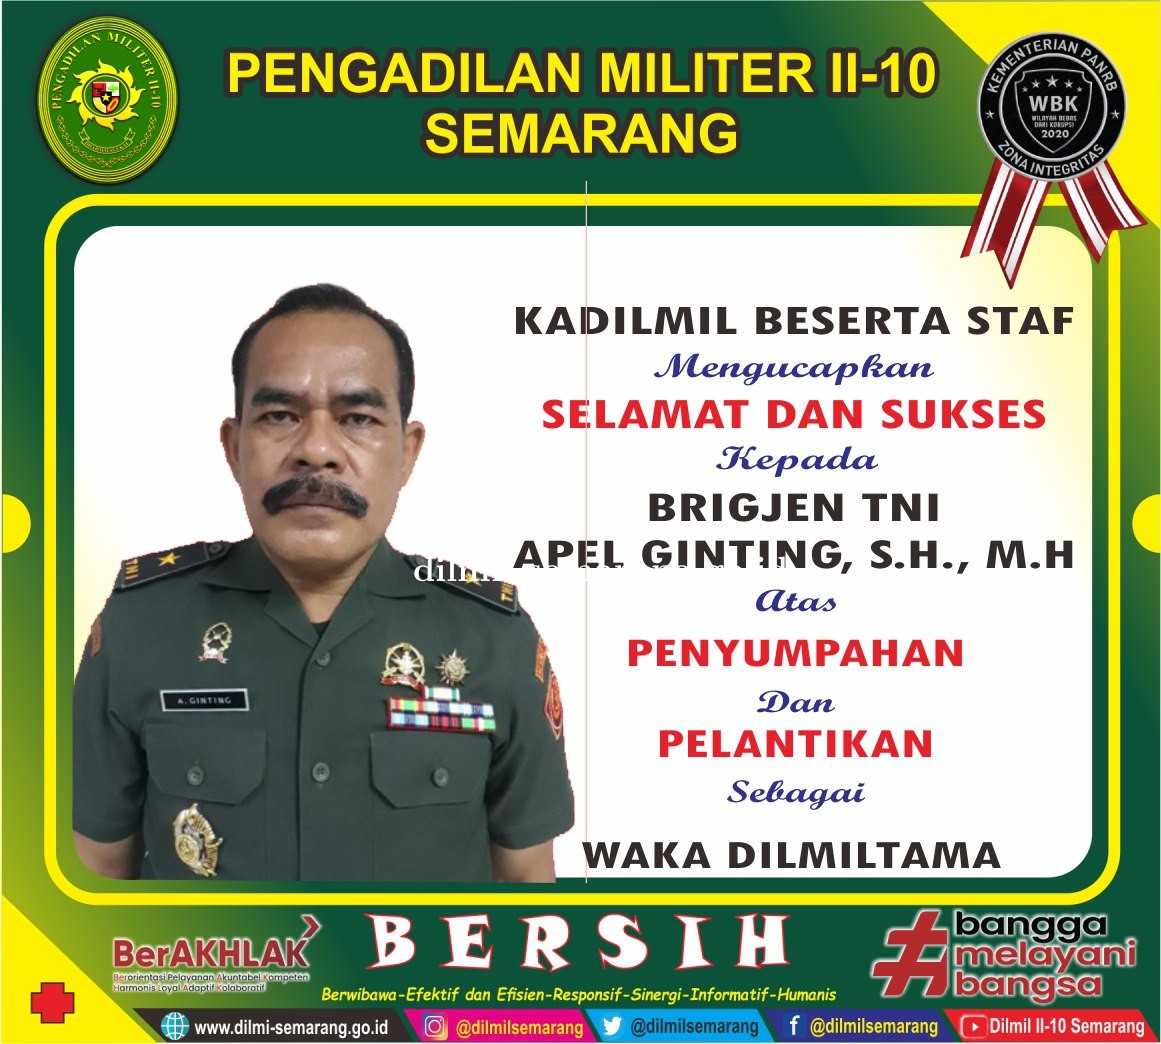 Brigjen TNI Apel Ginting, S.H., M.H. yang telah disumpah dan dilantik sebagai Wakadilmiltama